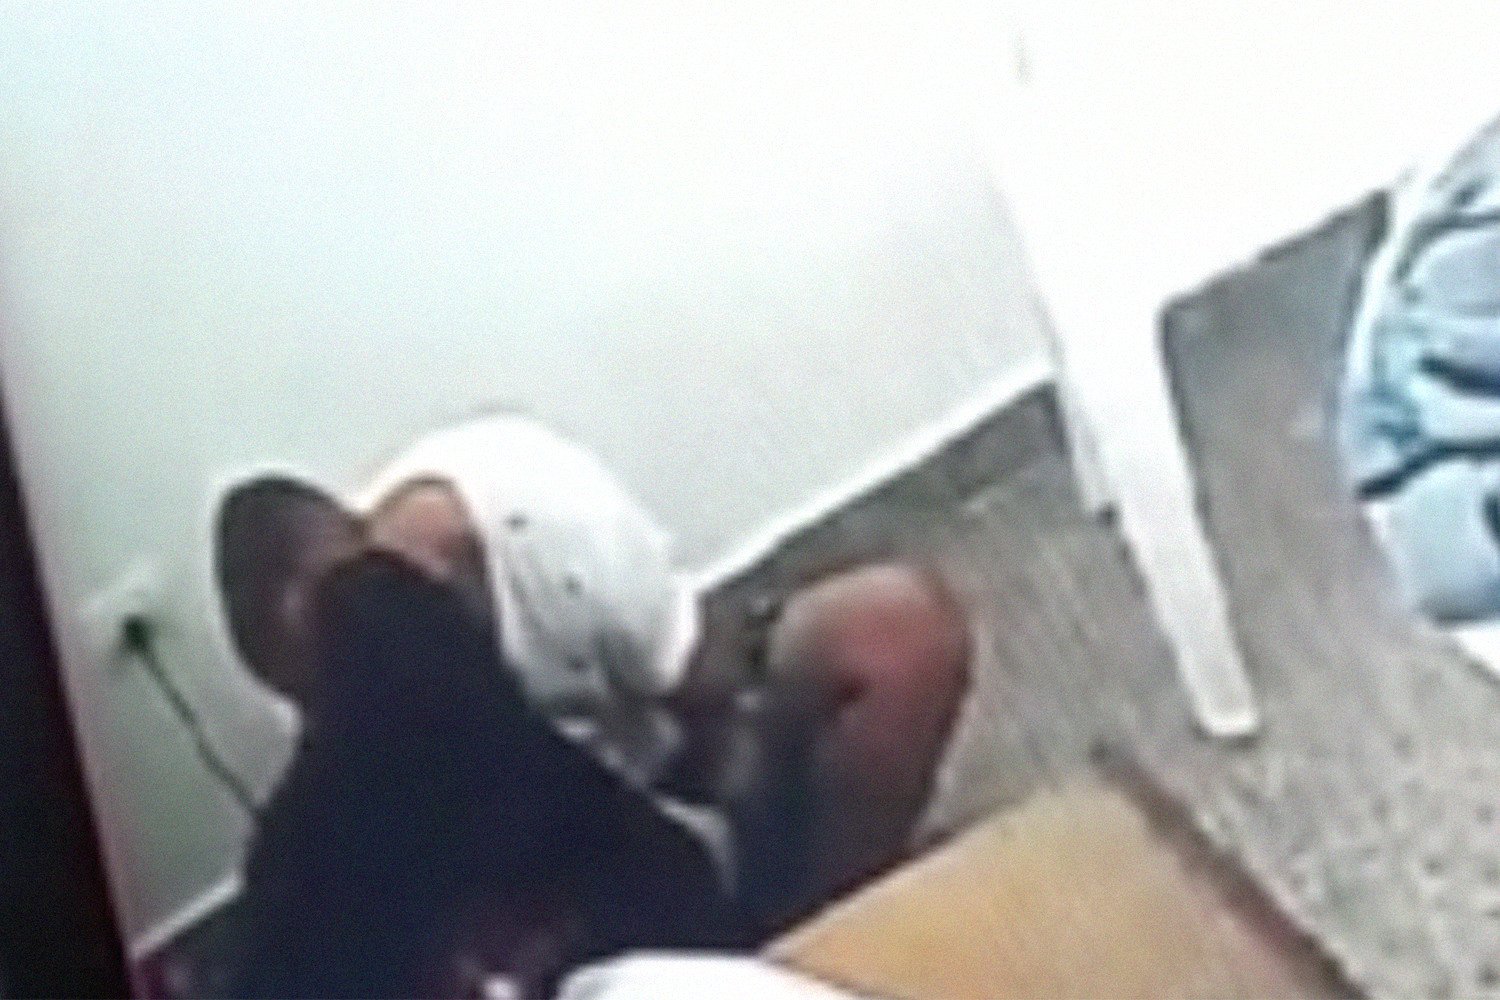 Դատավորը քննության տակ է հայտնվել բանտարկյալին համբուրելու համար